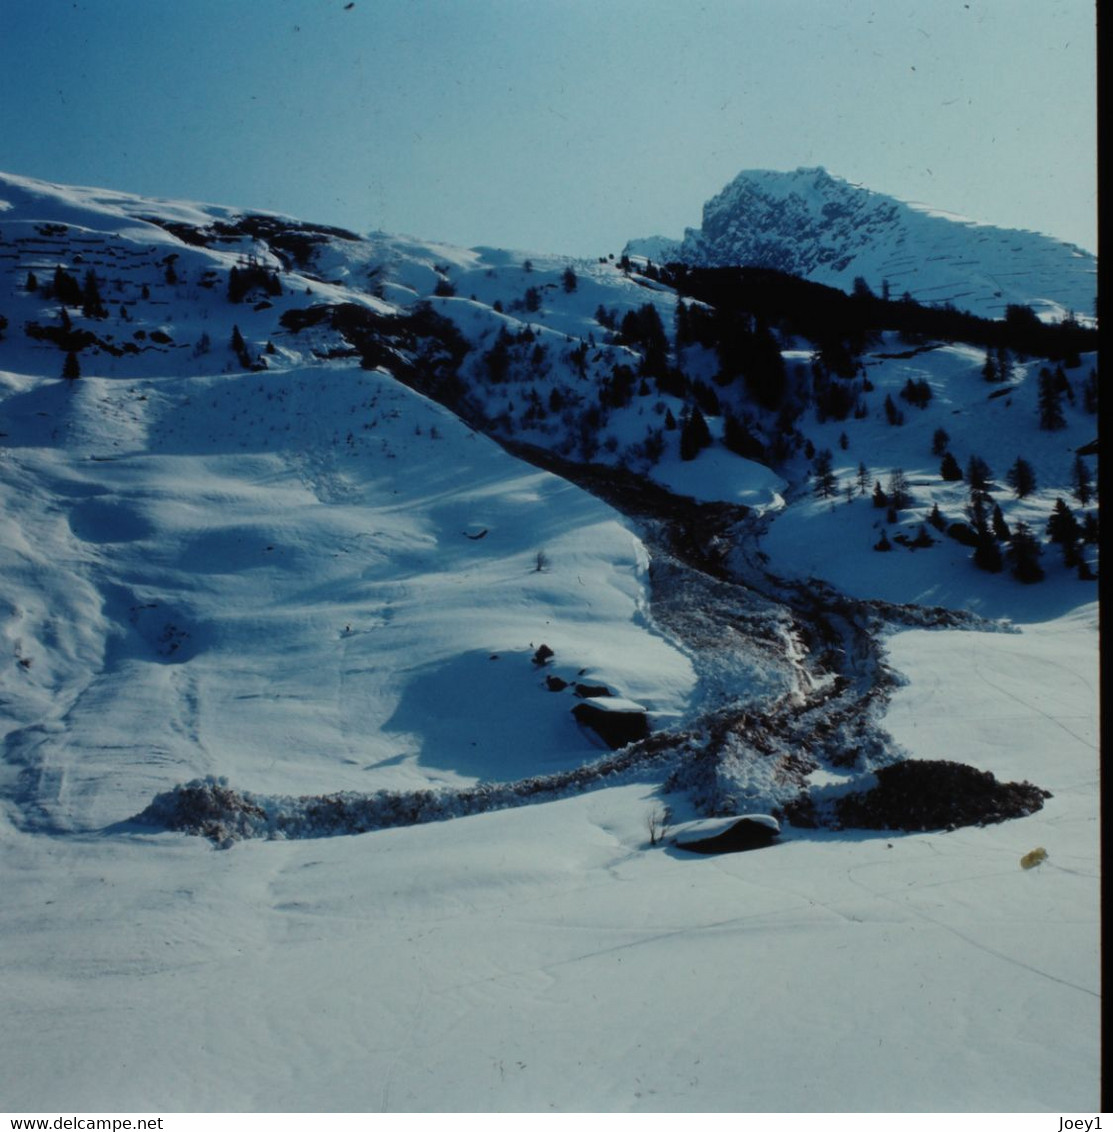 Photos André Roch Alpiniste Spécialiste Des Avalanches,18 Ekta Originaux 6/6,Davos Et Autres 1968,1970 - Dias